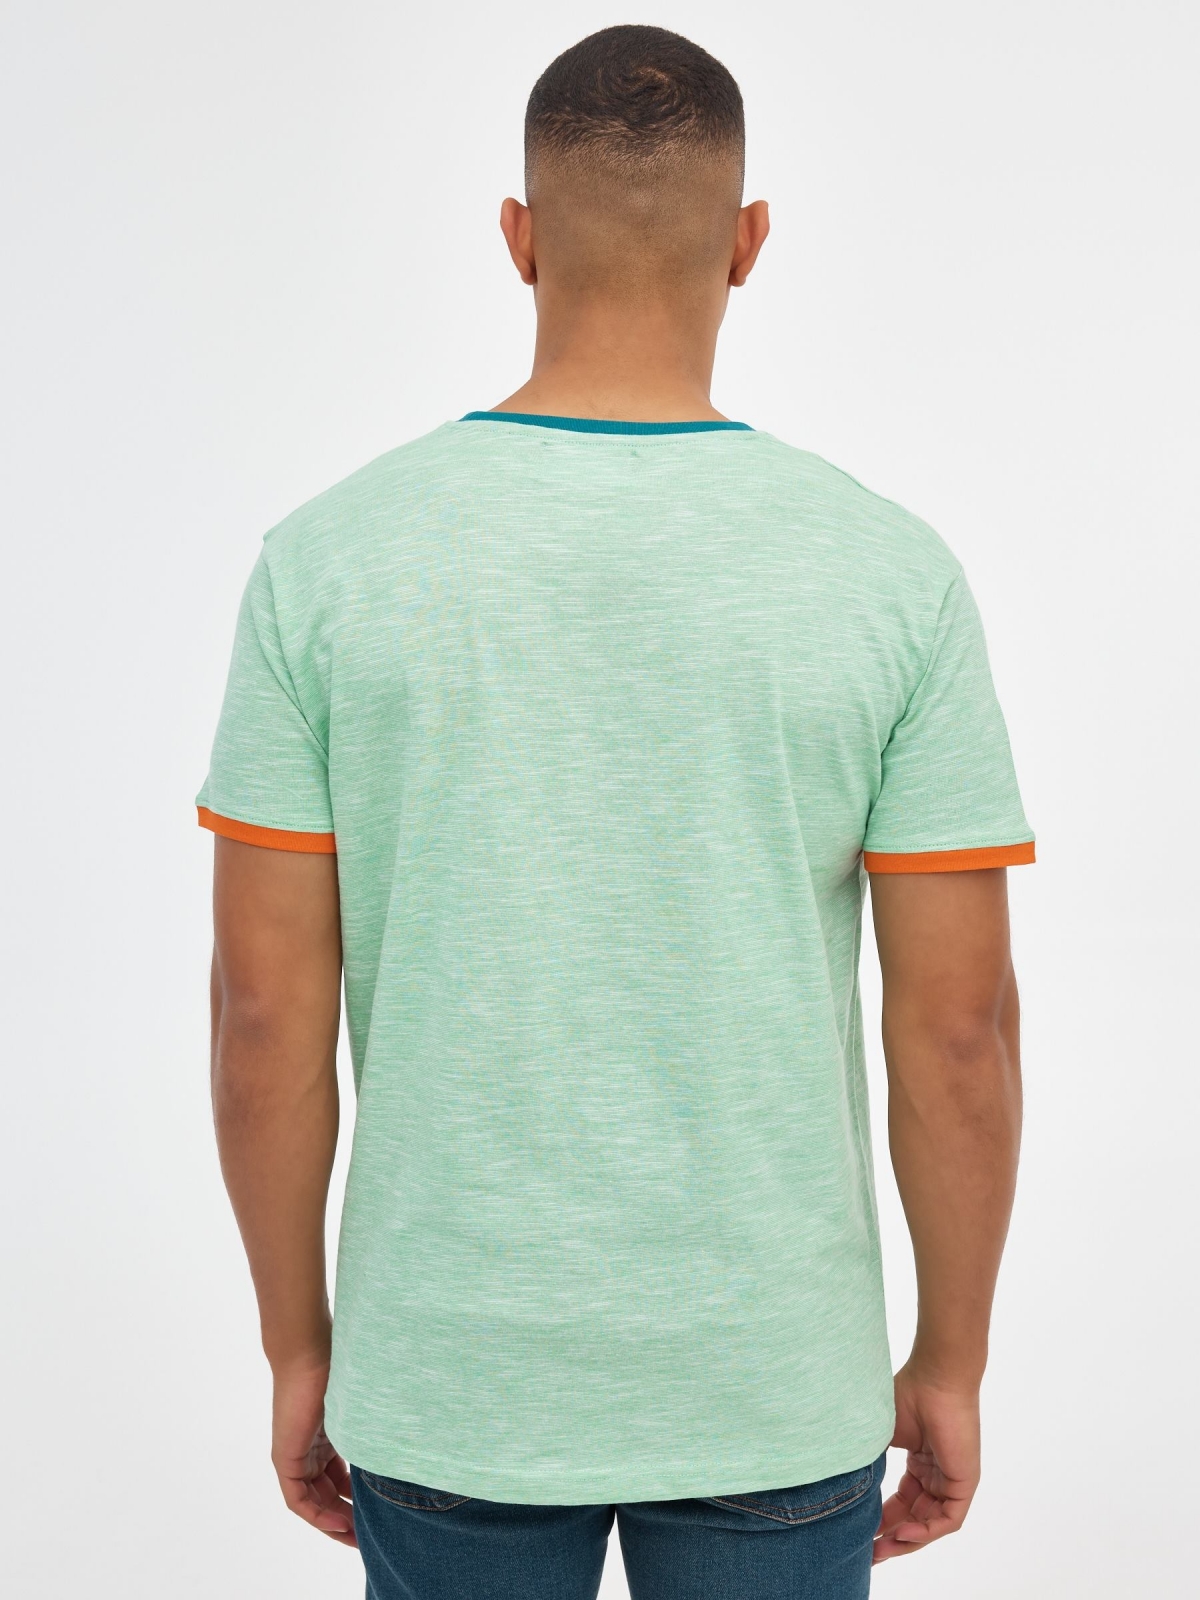 T-shirt básica com textura menta vista meia traseira